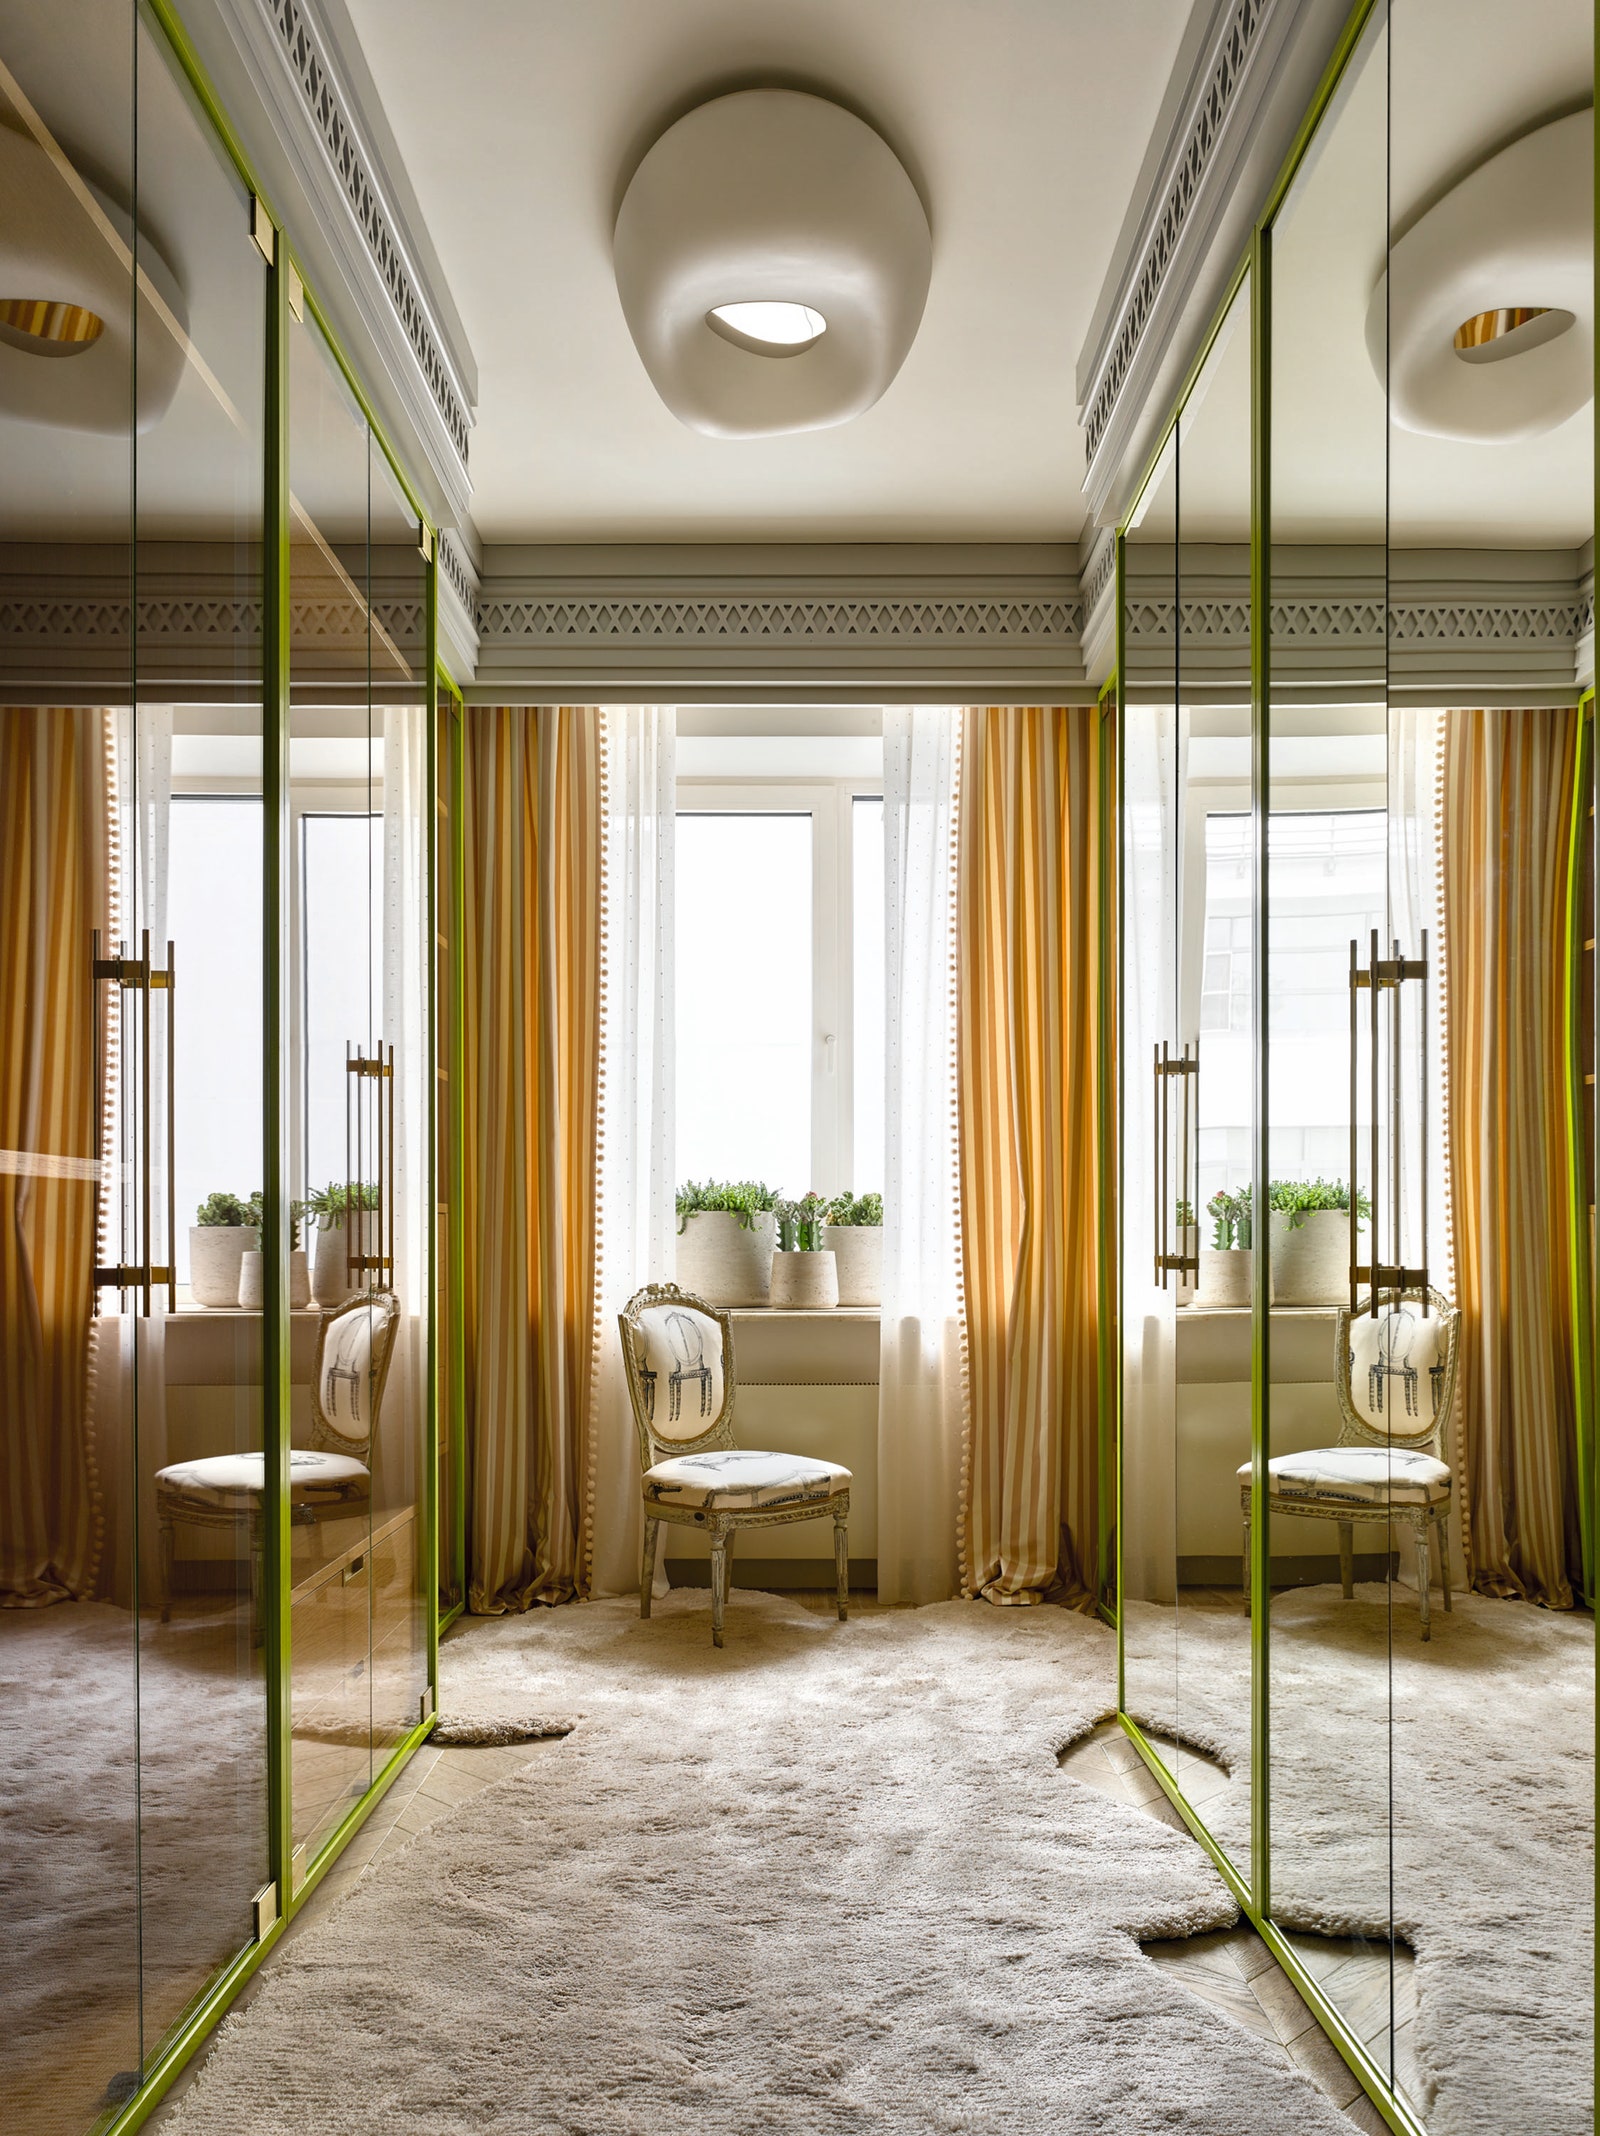 Мастерсюит как дизайнеры оформляют приватную зону — спальню ванную гардеробную